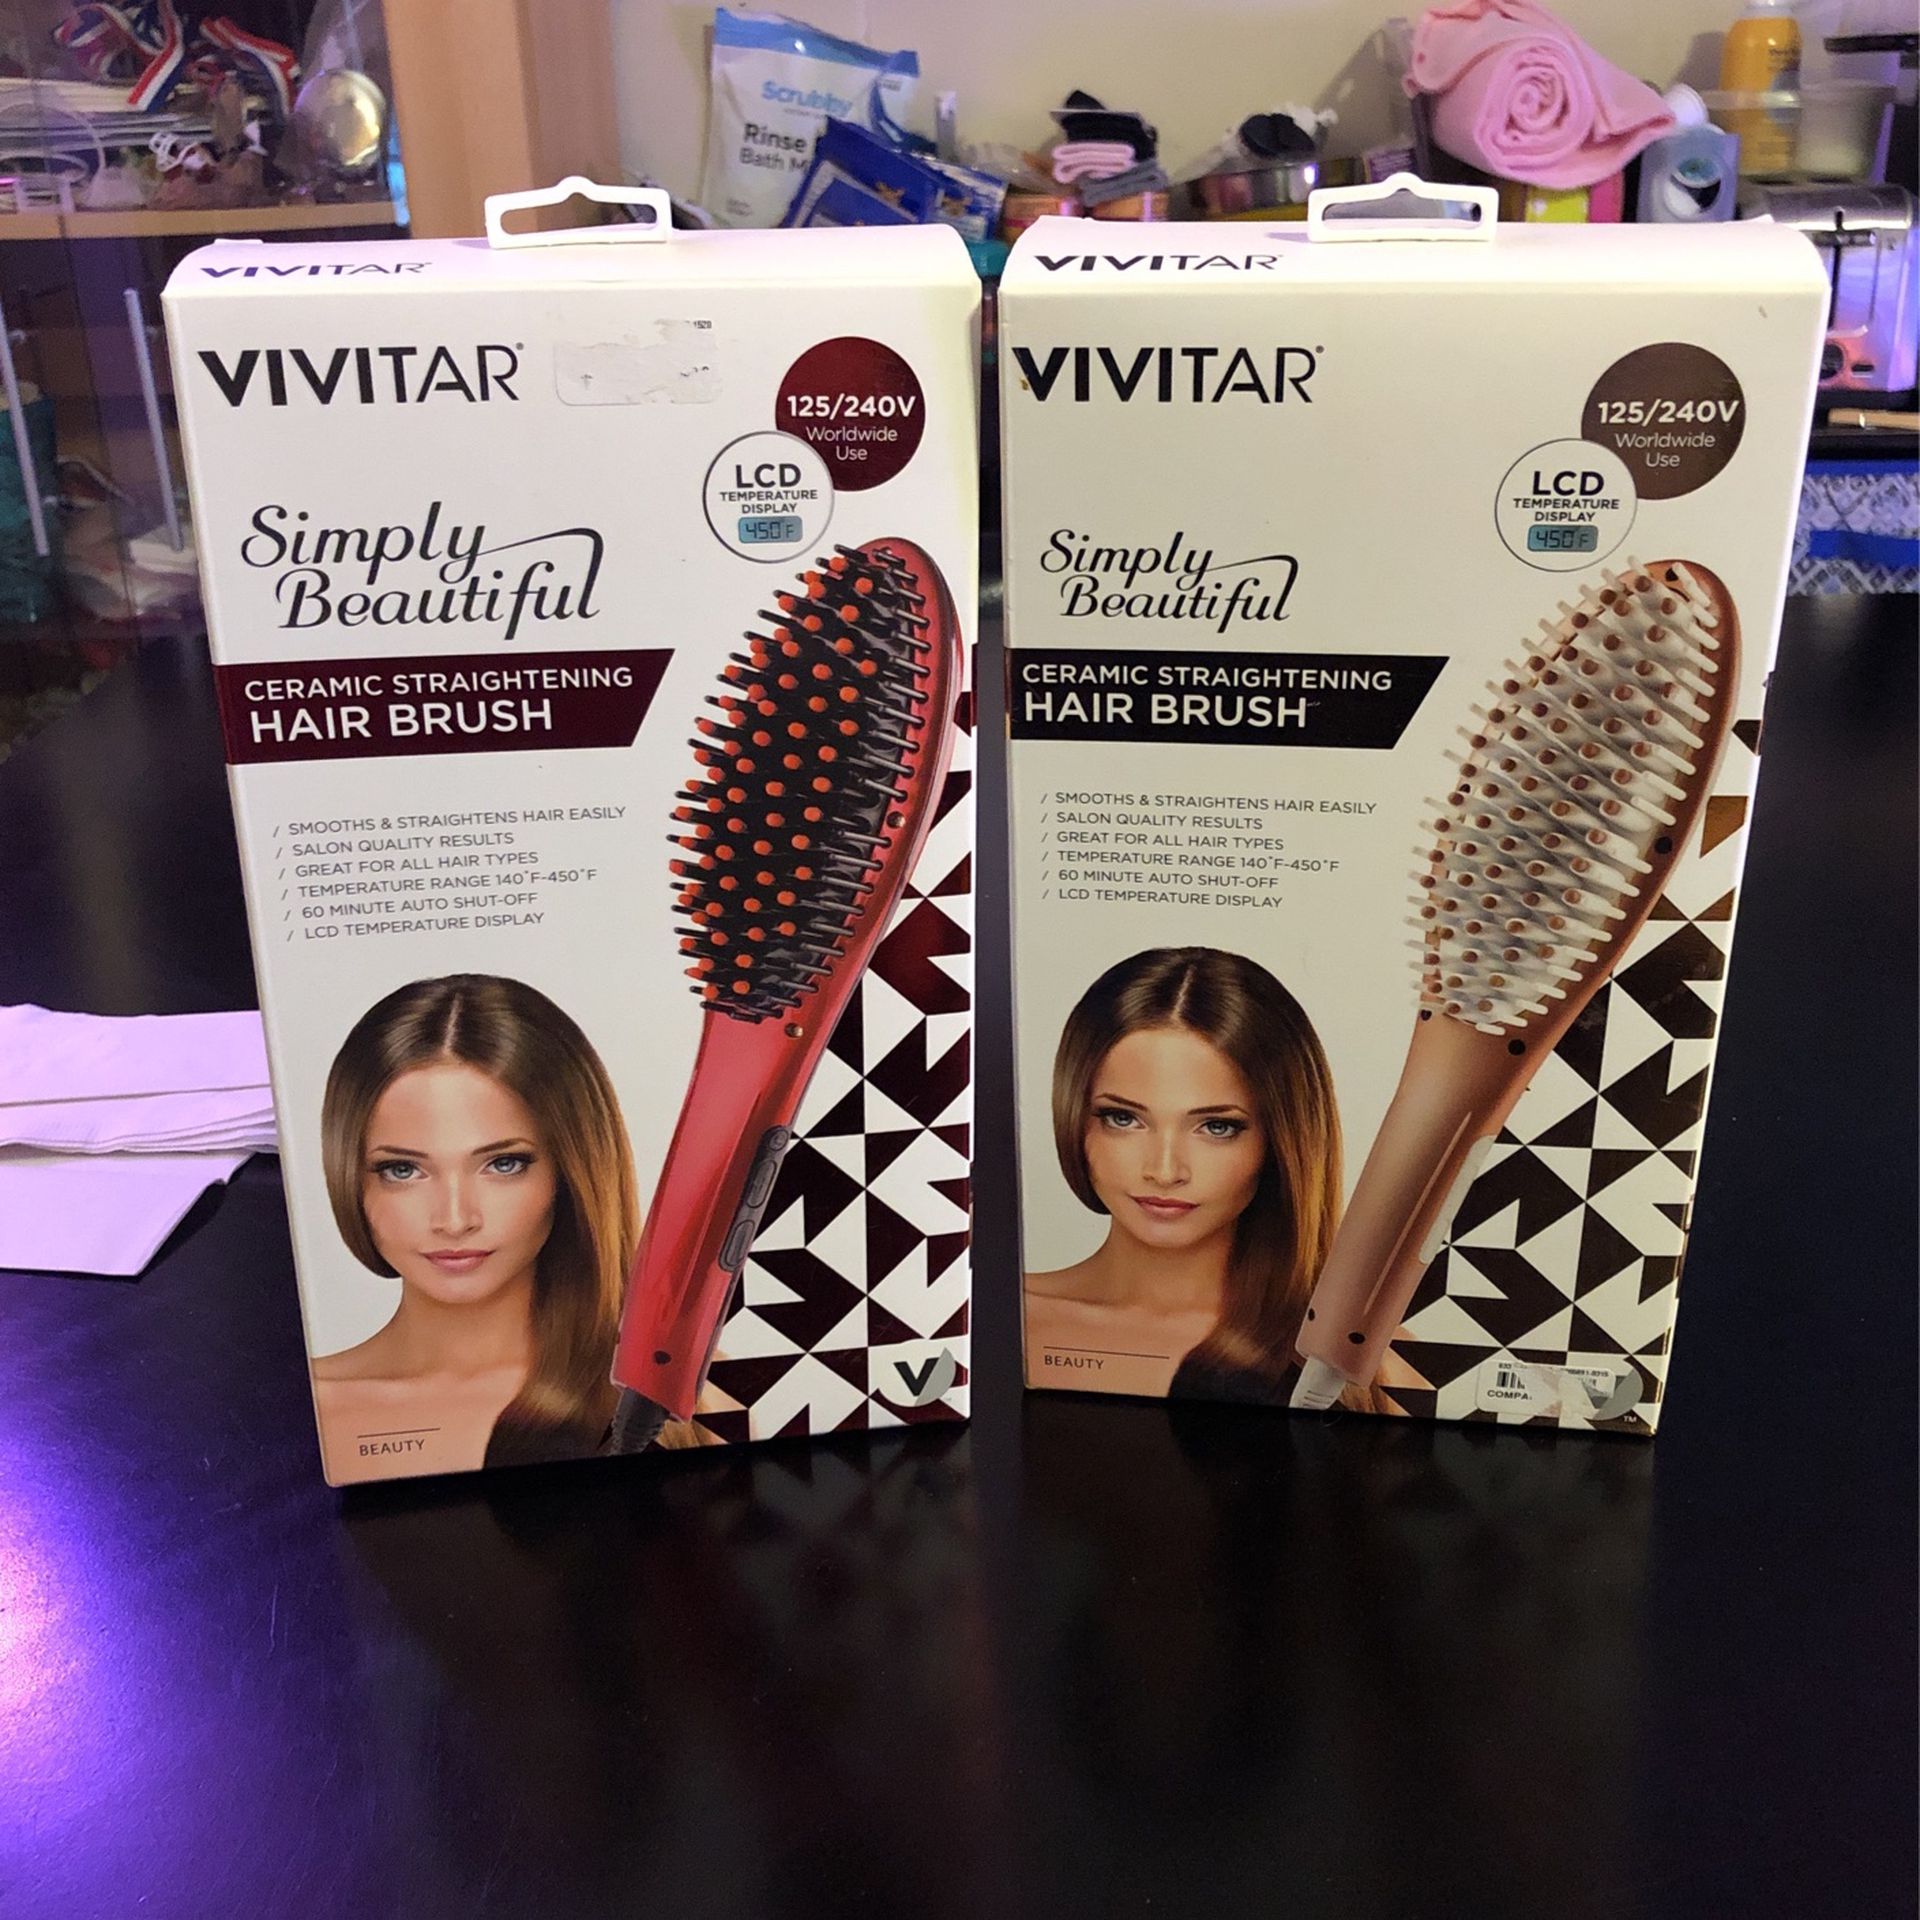 Vivitar Ceramic Straightening Hair Brushes - Both For $15.00